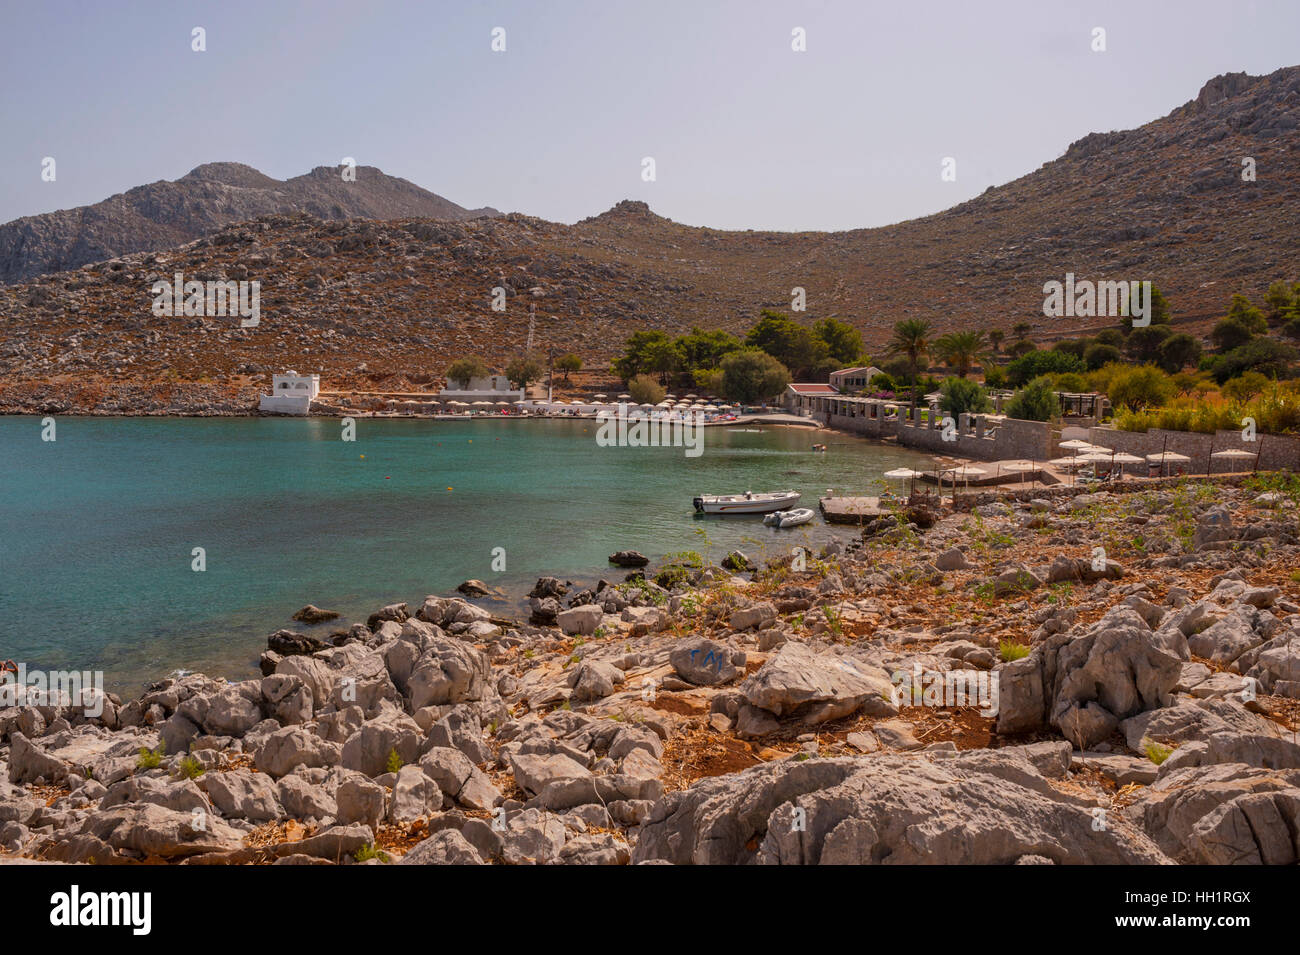 La plage d'Agia Marina, sur l'île de Symi Grèce Banque D'Images